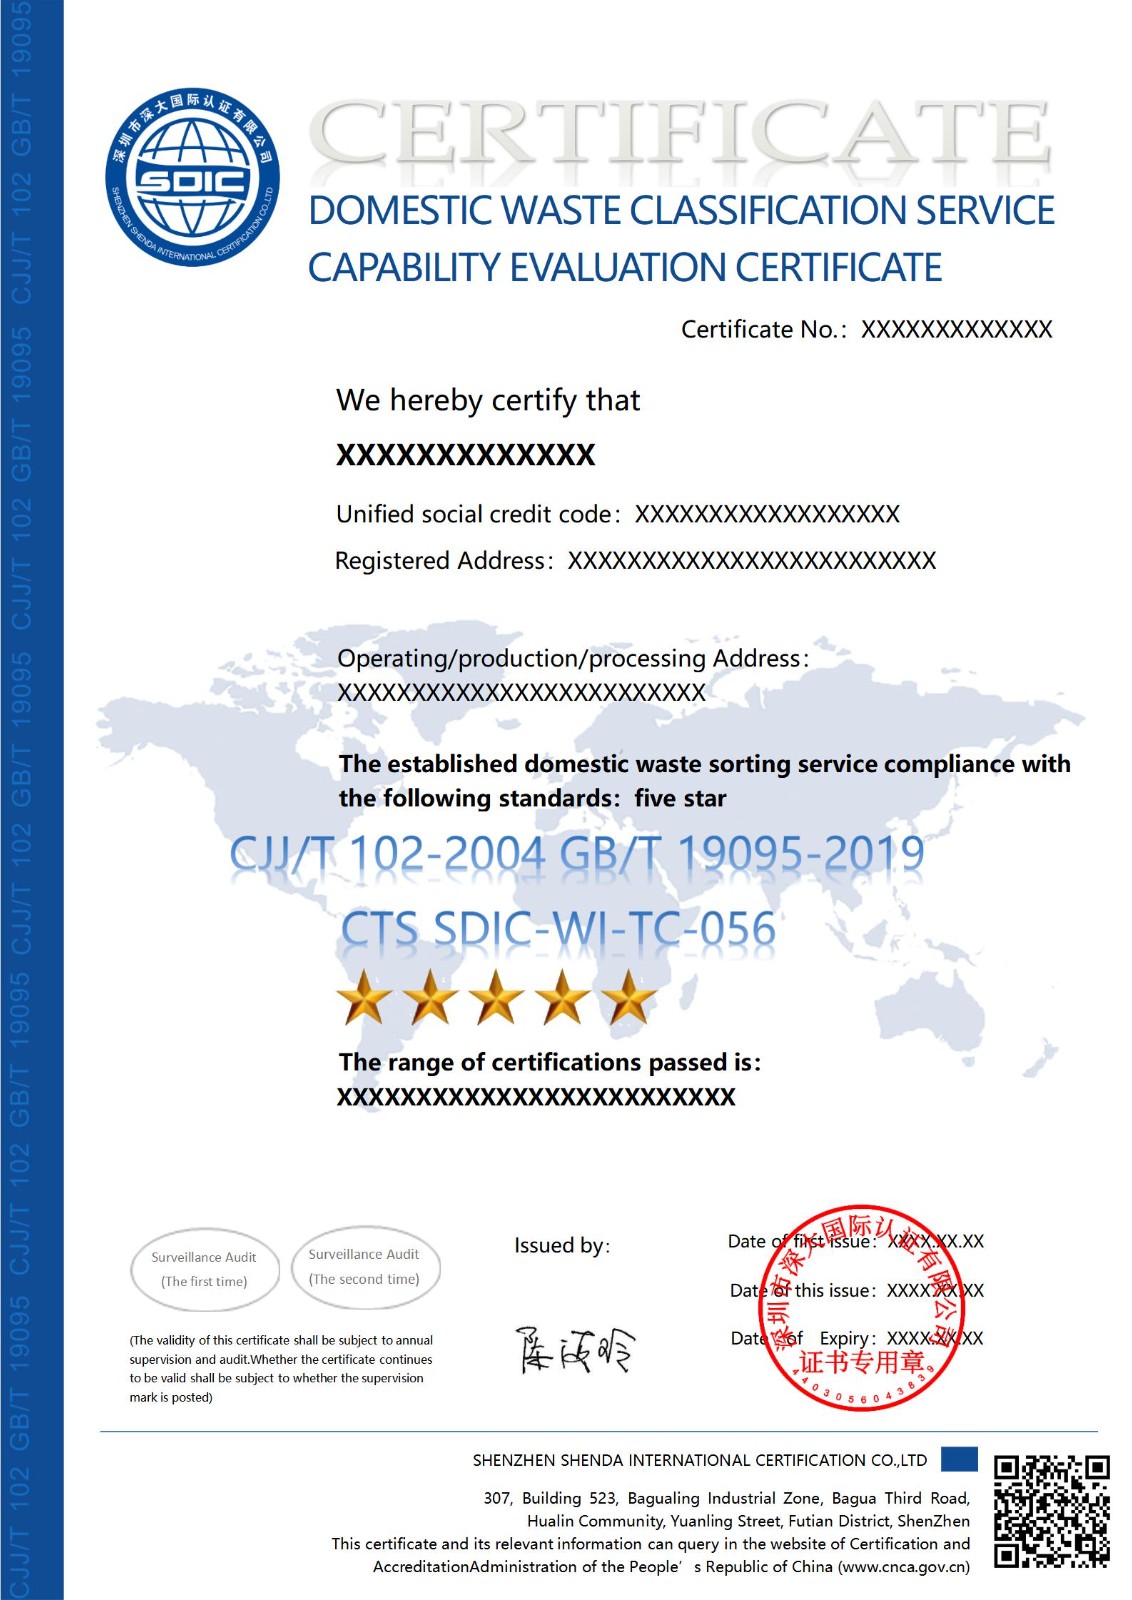 CJJ/T 102 GB/T 19095生活垃圾分类服务能力评价认证证书-英文版